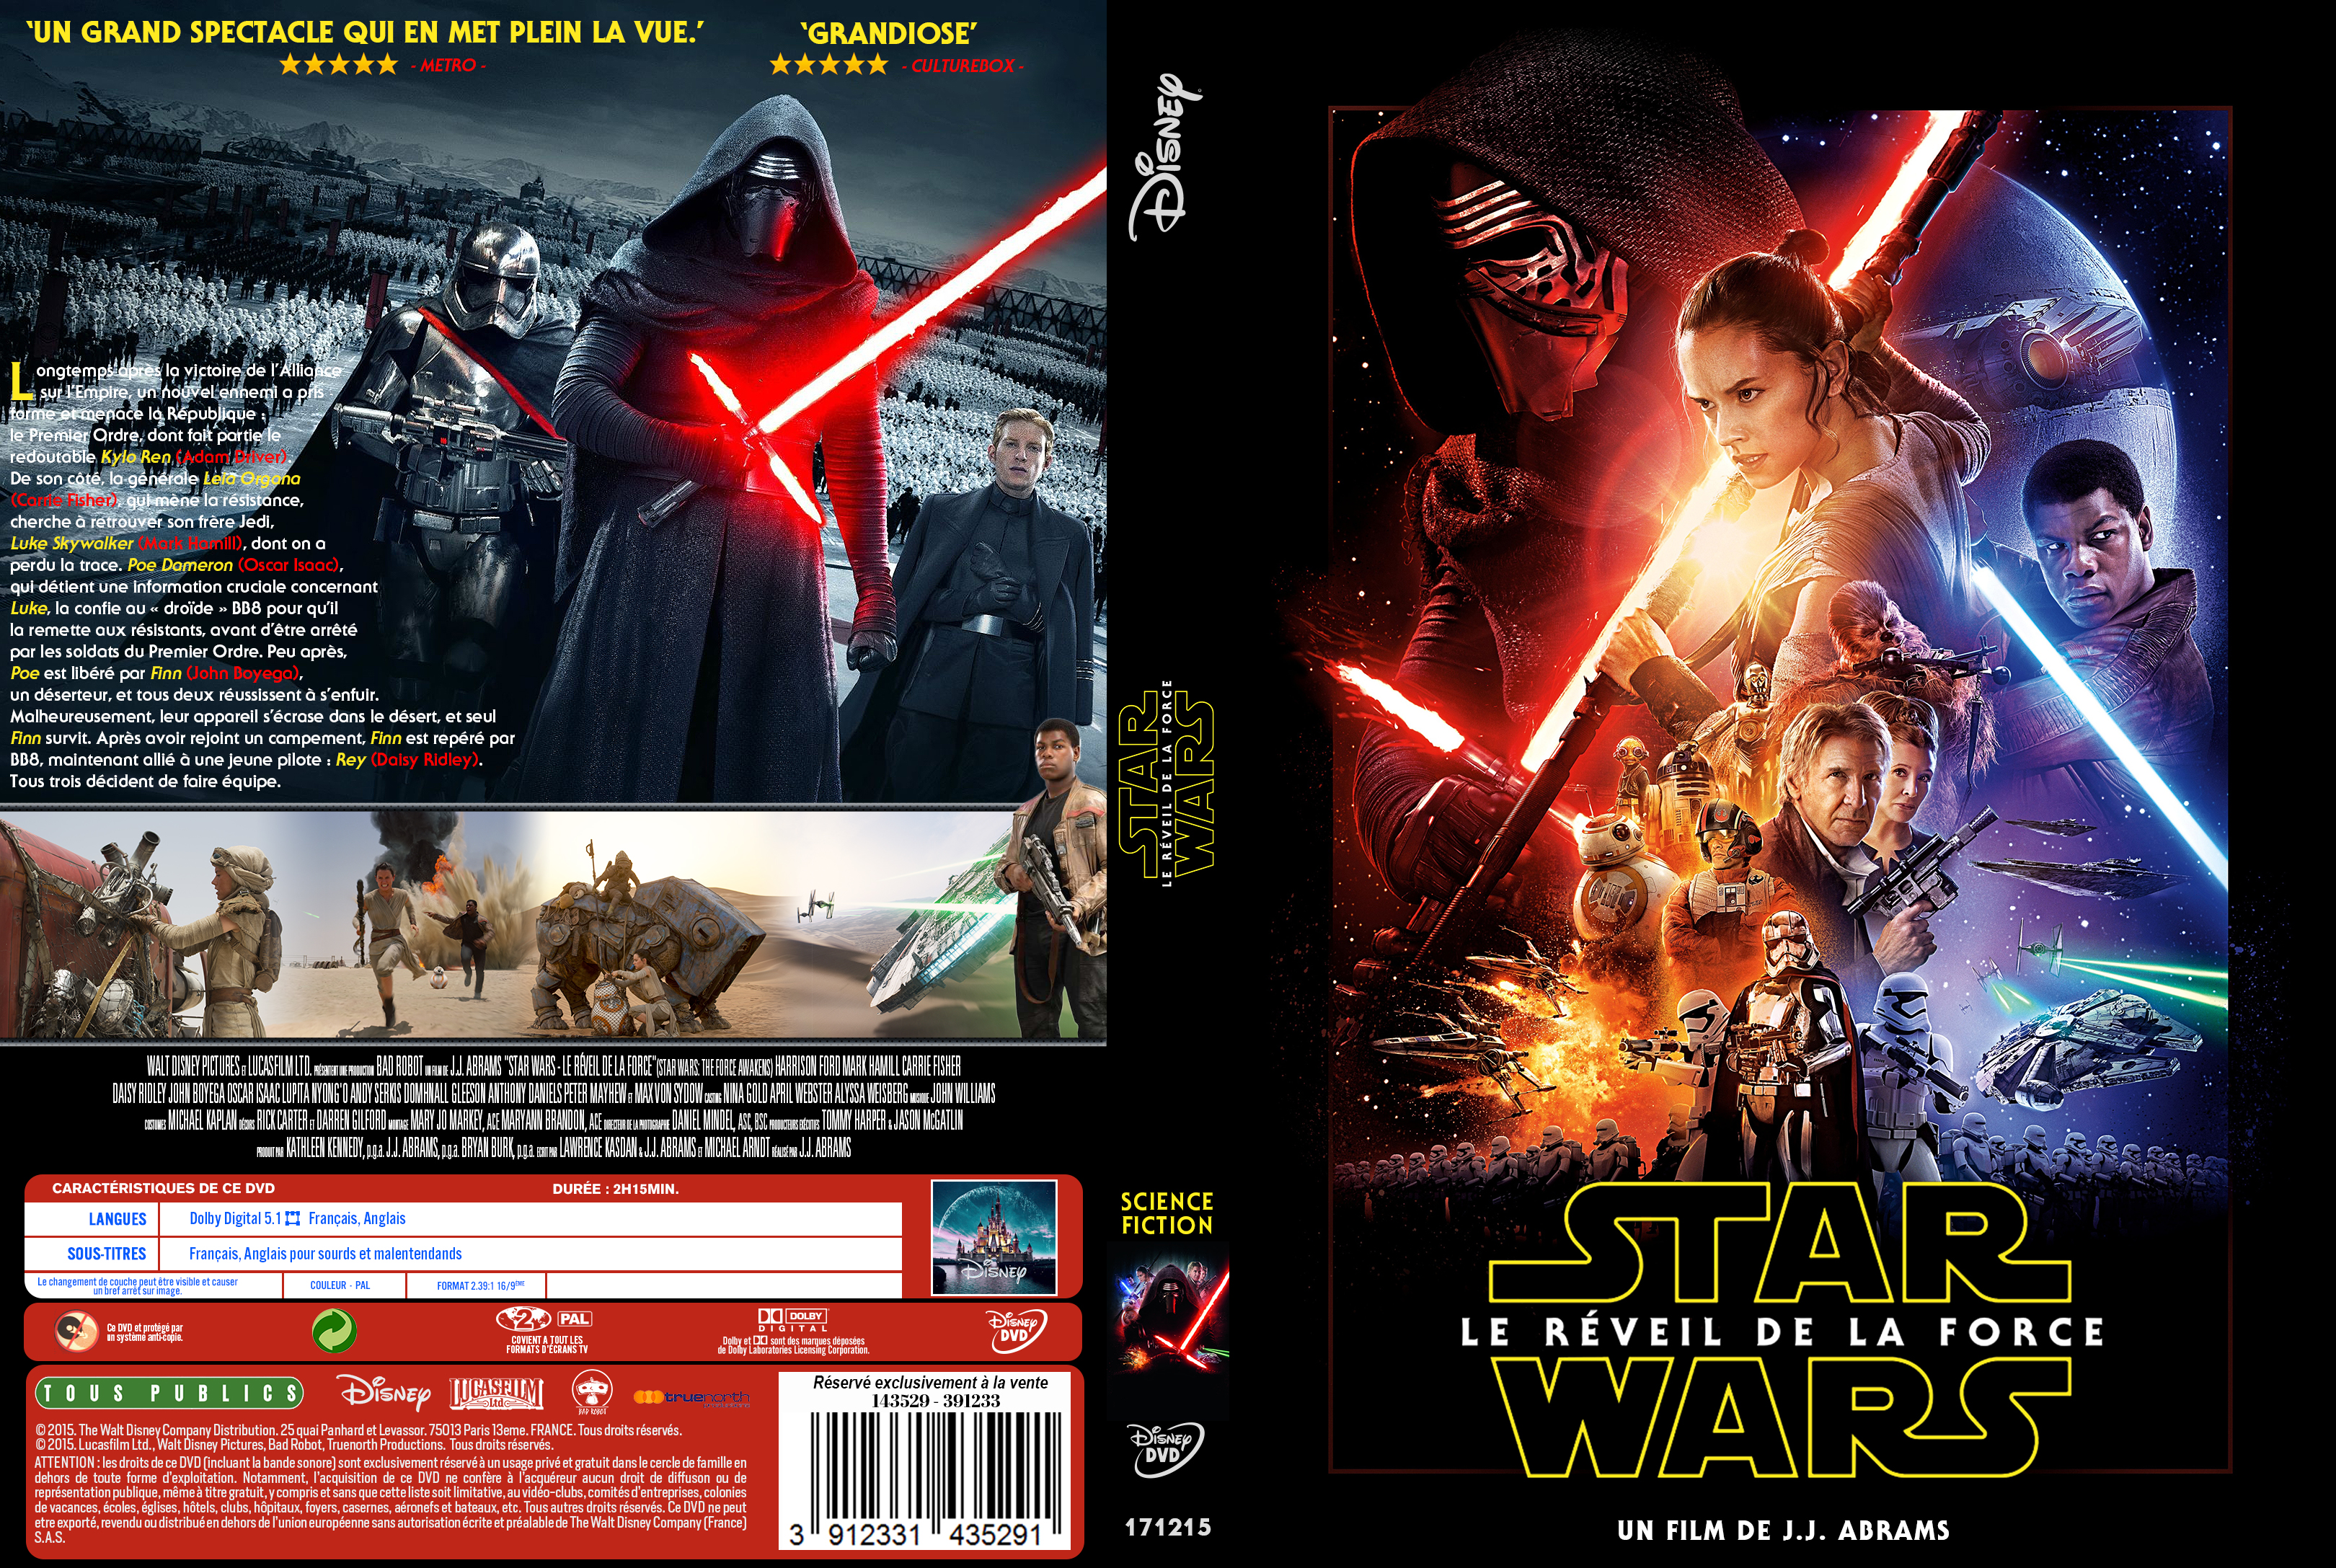 Jaquette DVD Star Wars: Episode VII Le rveil de la force custom